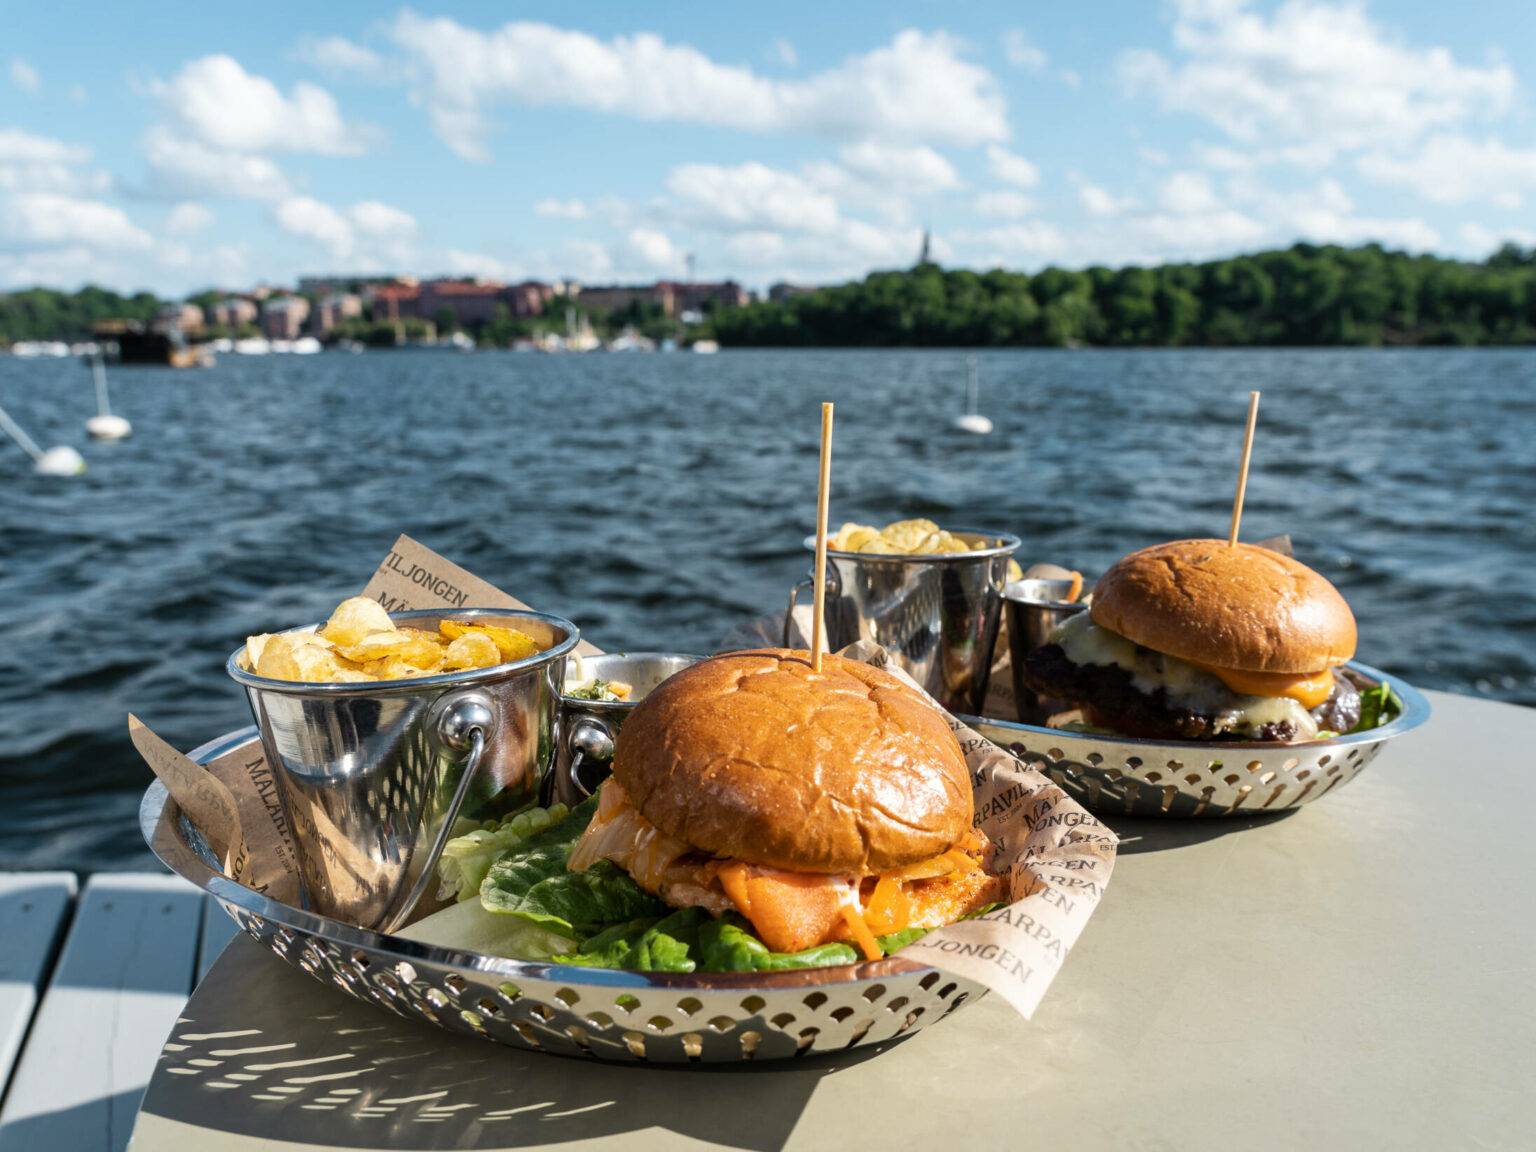 Zum Mittagessen darf es in der schwedischen Küche auch schon mal einen leckeren Burger am Wasser geben.